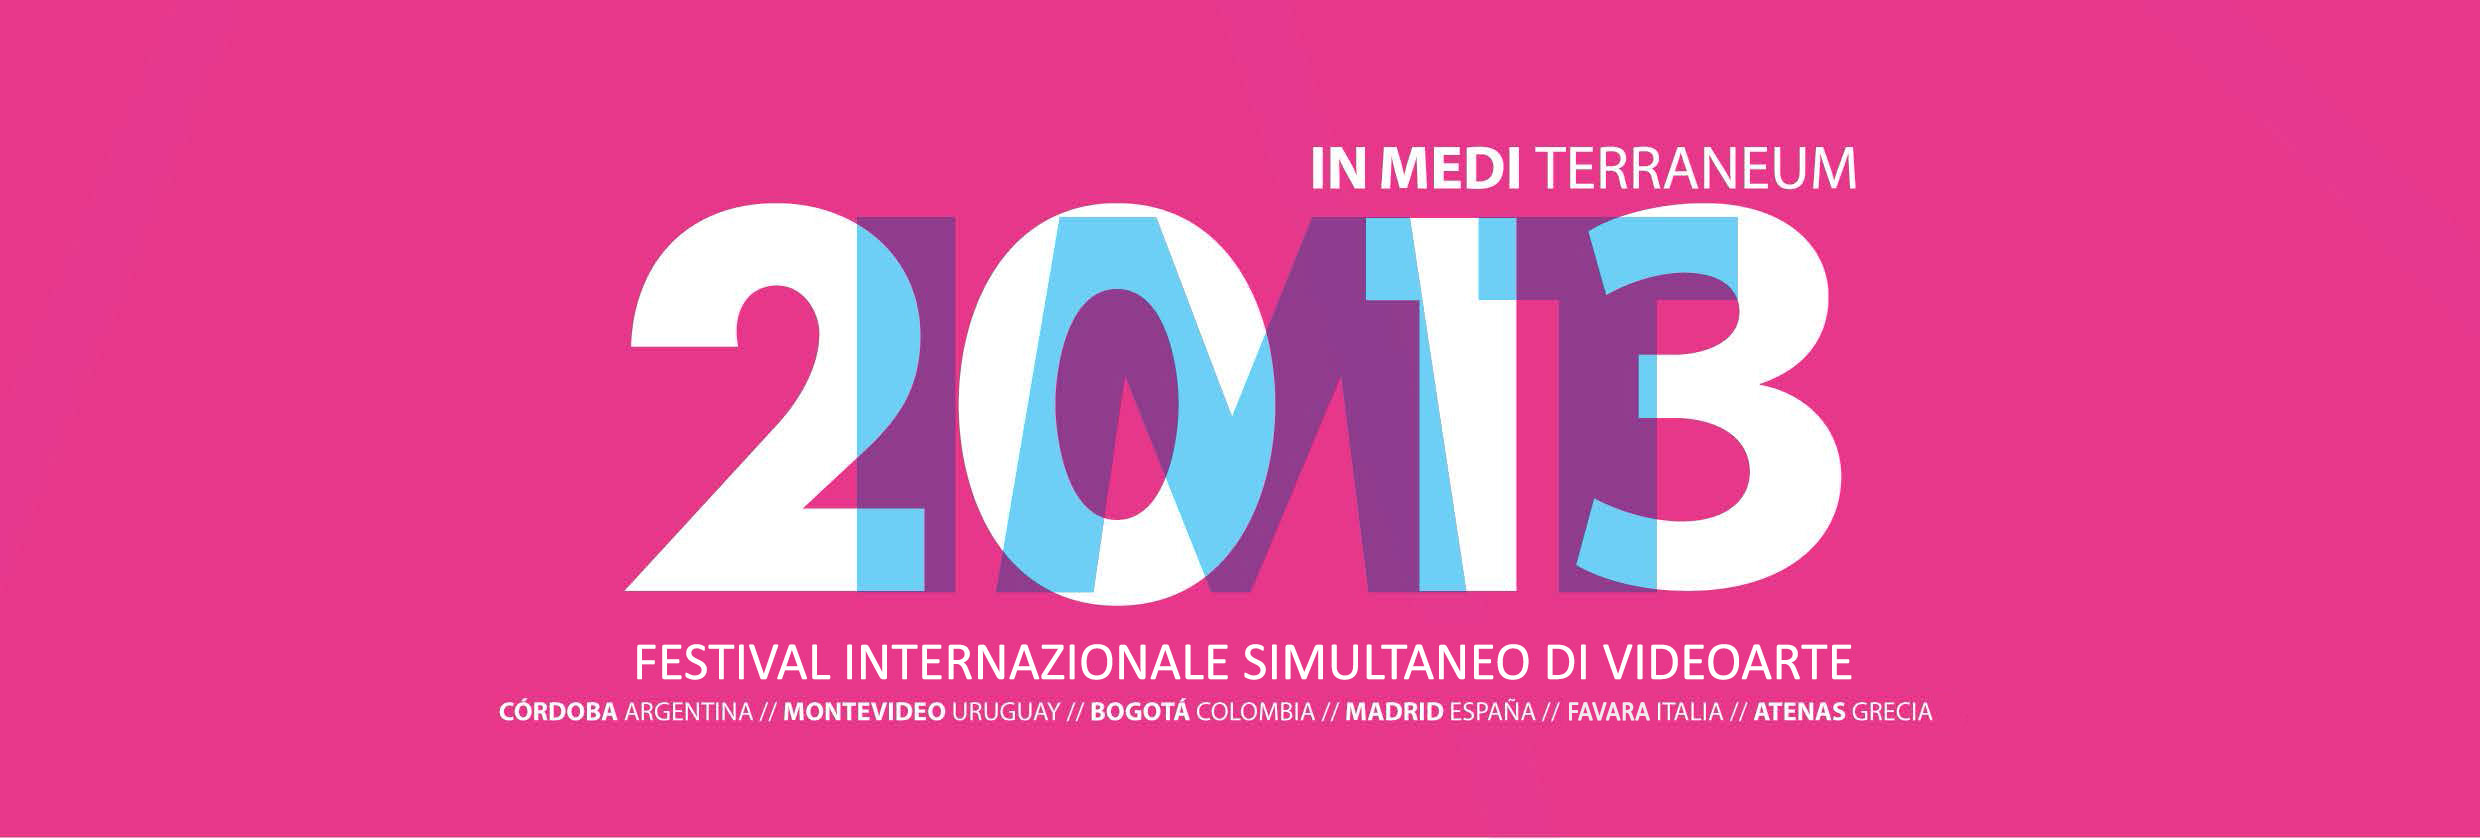 IMT#4 - Festival Internazionale Simultaneo di Video Arte